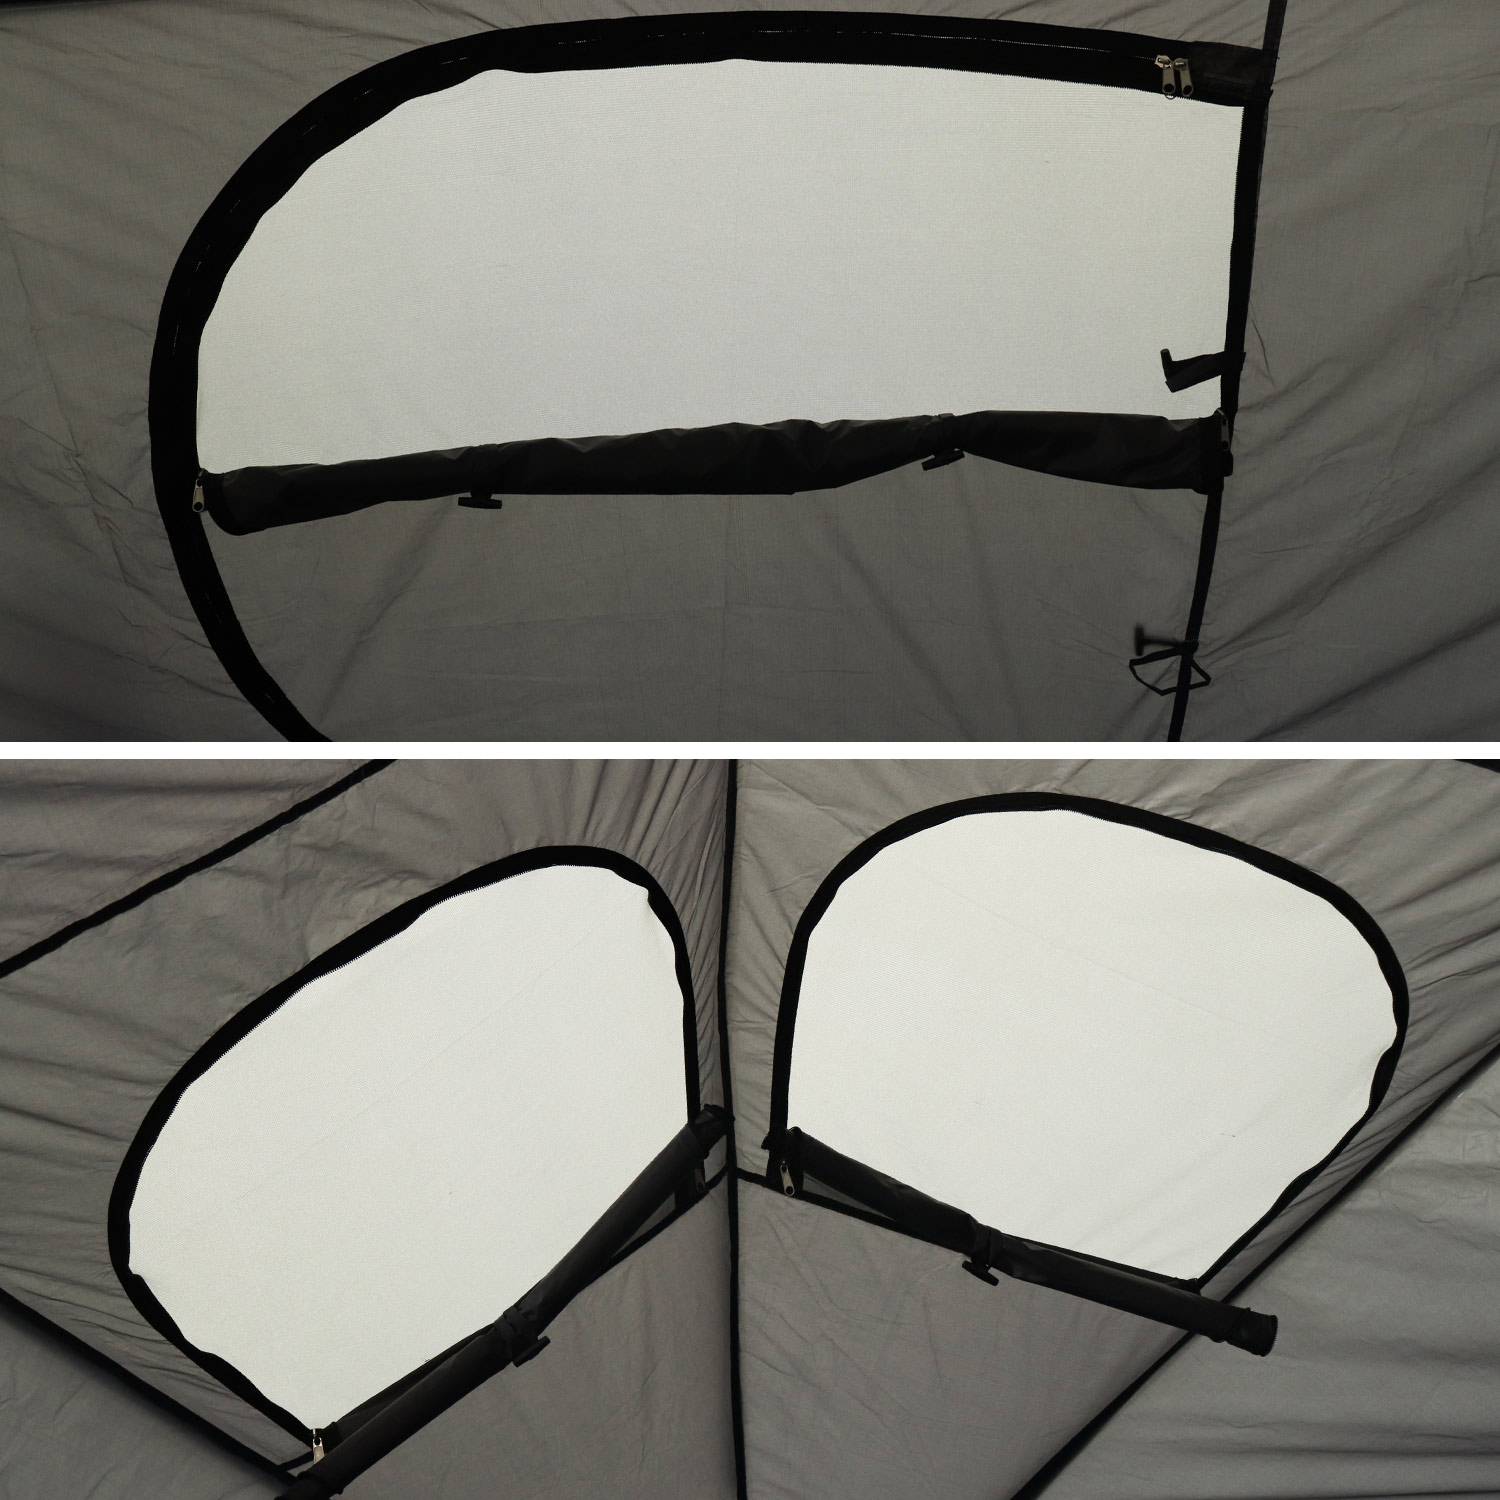 Carpa para cama elástica Ø305cm (red interior y exterior) poliéster, tratamiento UV, 2 puertas, 4 ventanas y bolsa de transporte Photo5